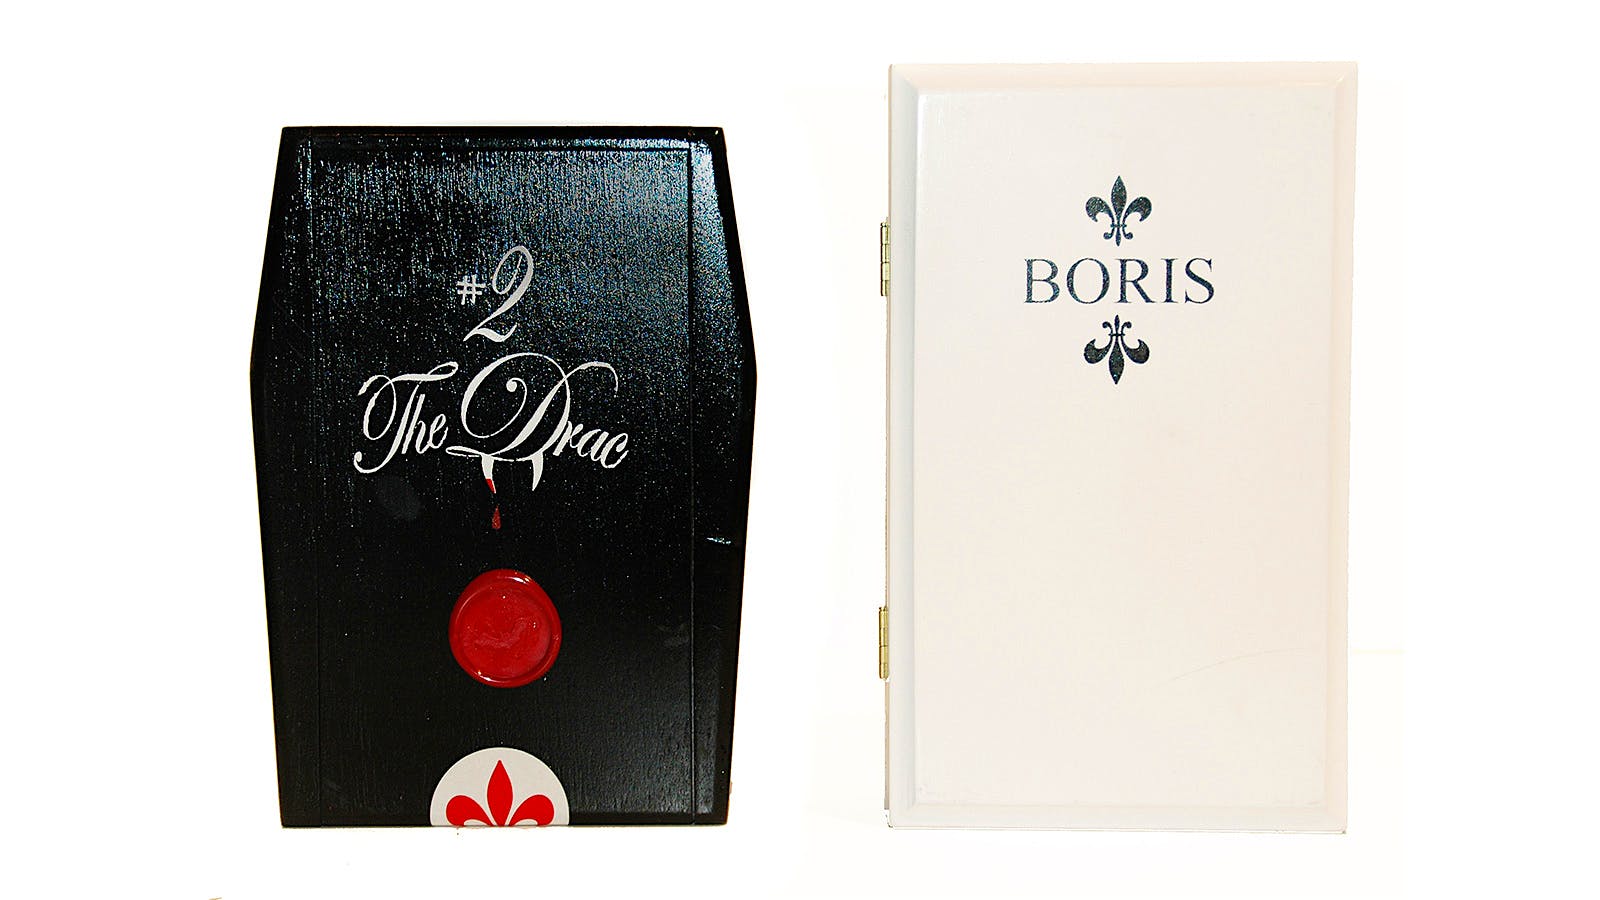 Tatuaje The Drac box (left) next to Boris